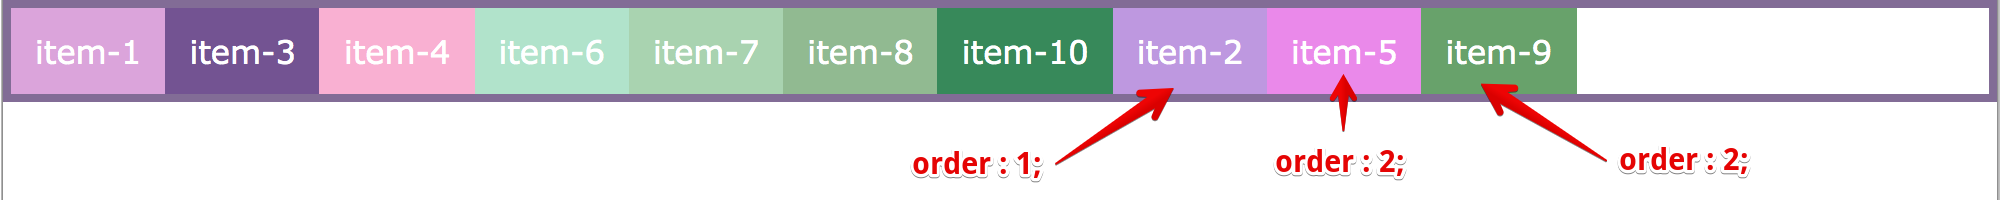 order: 2; same order number alignment